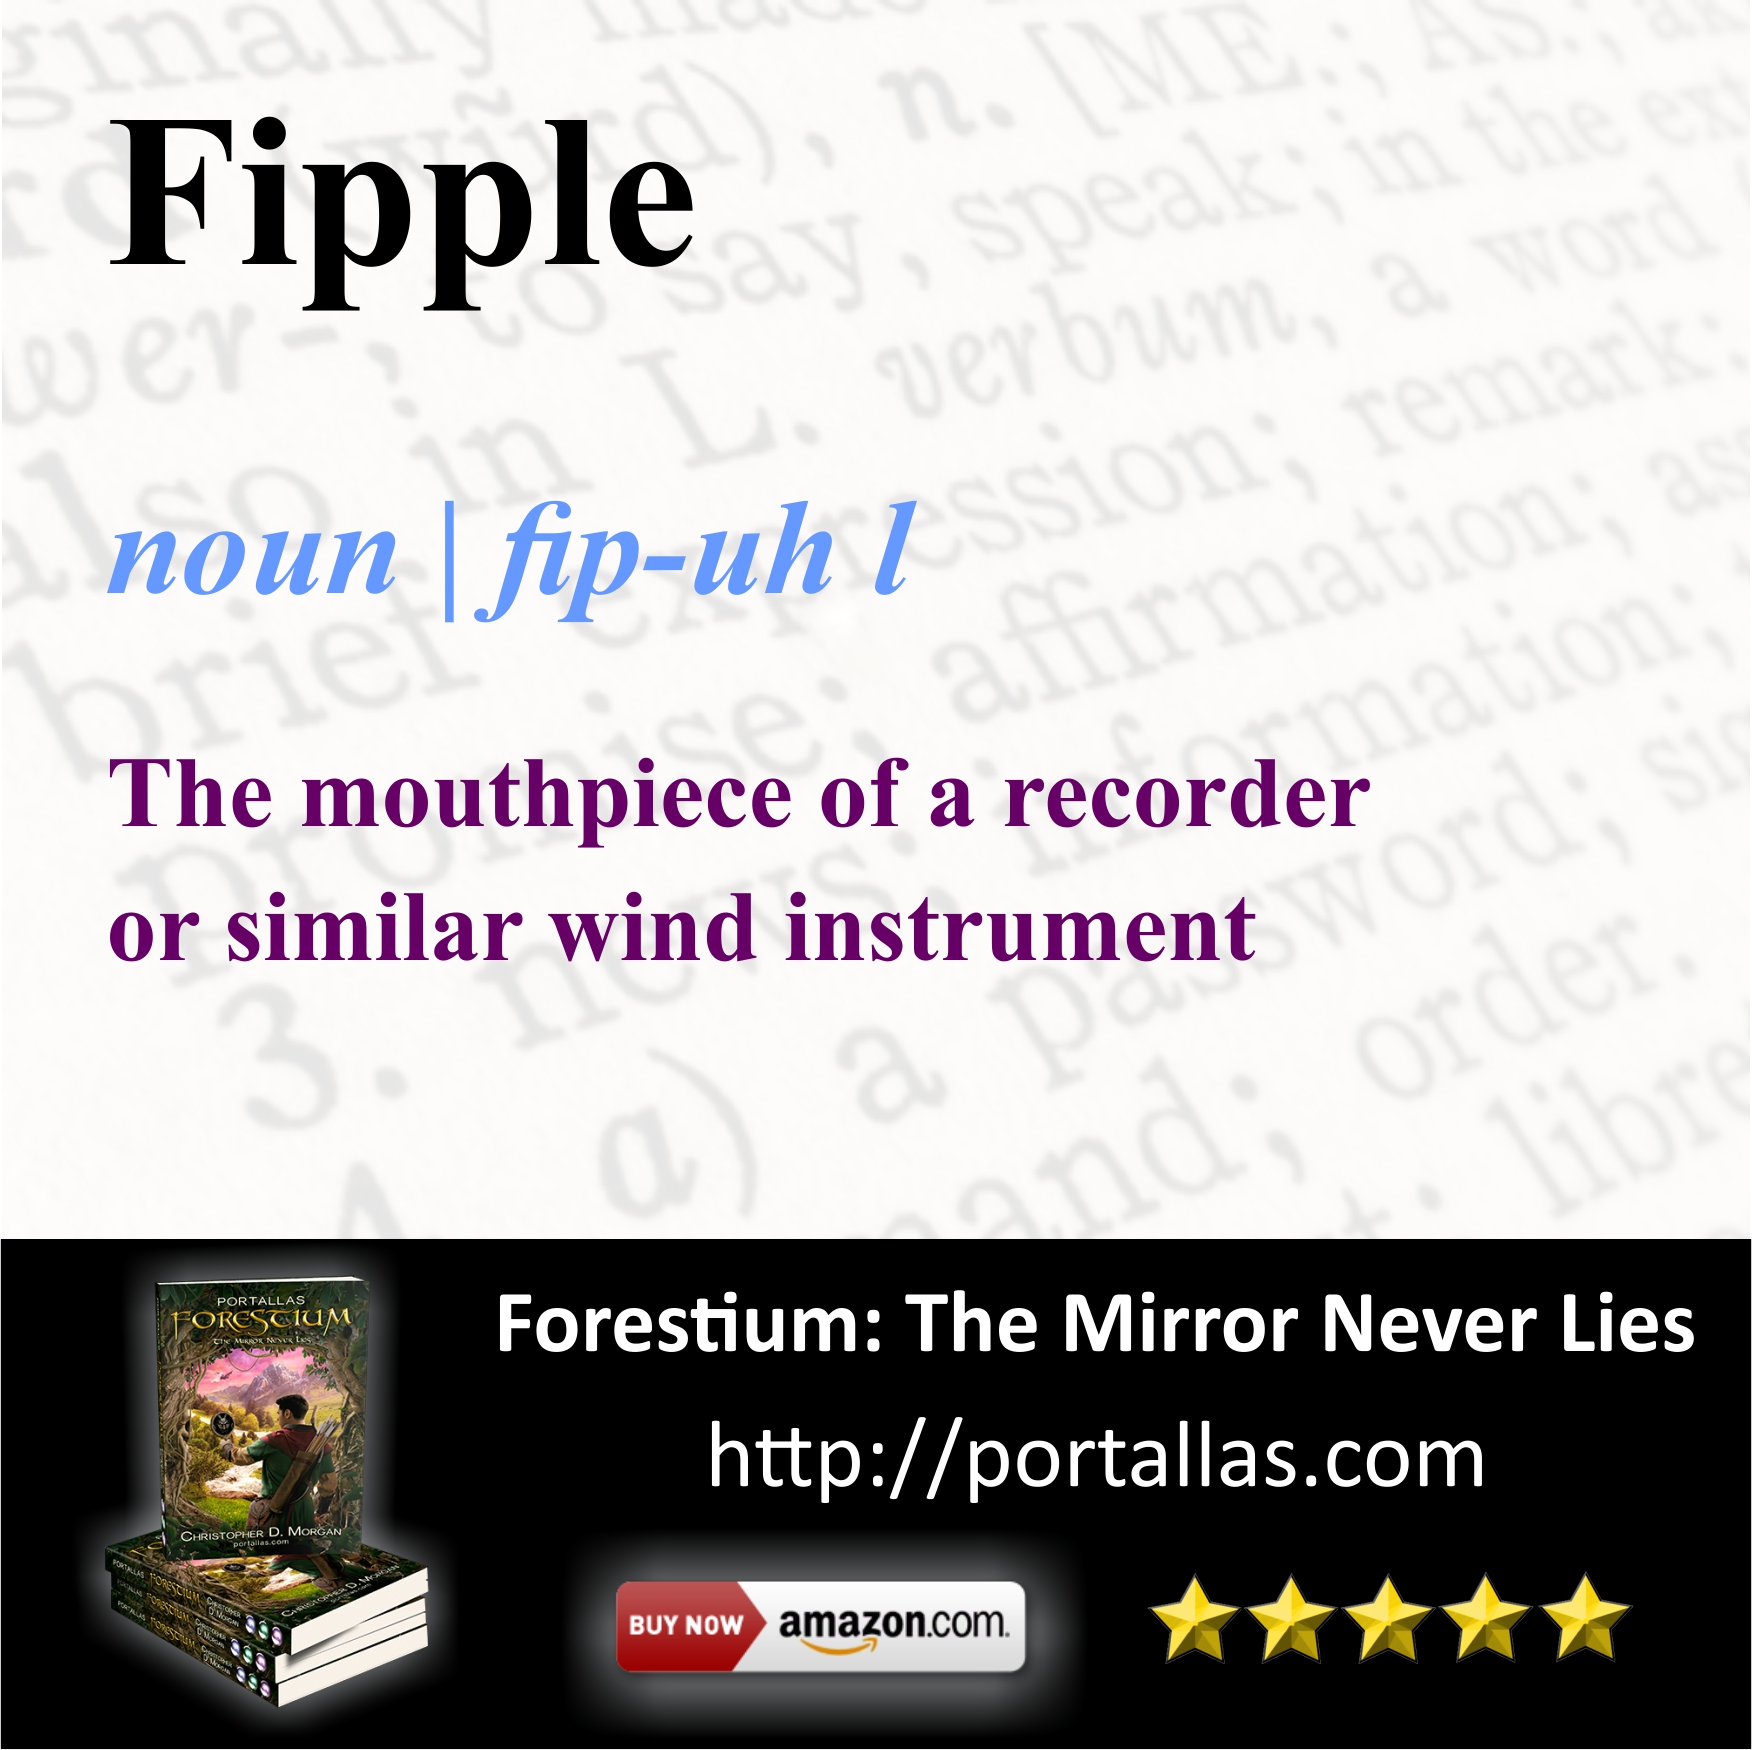 Fipple